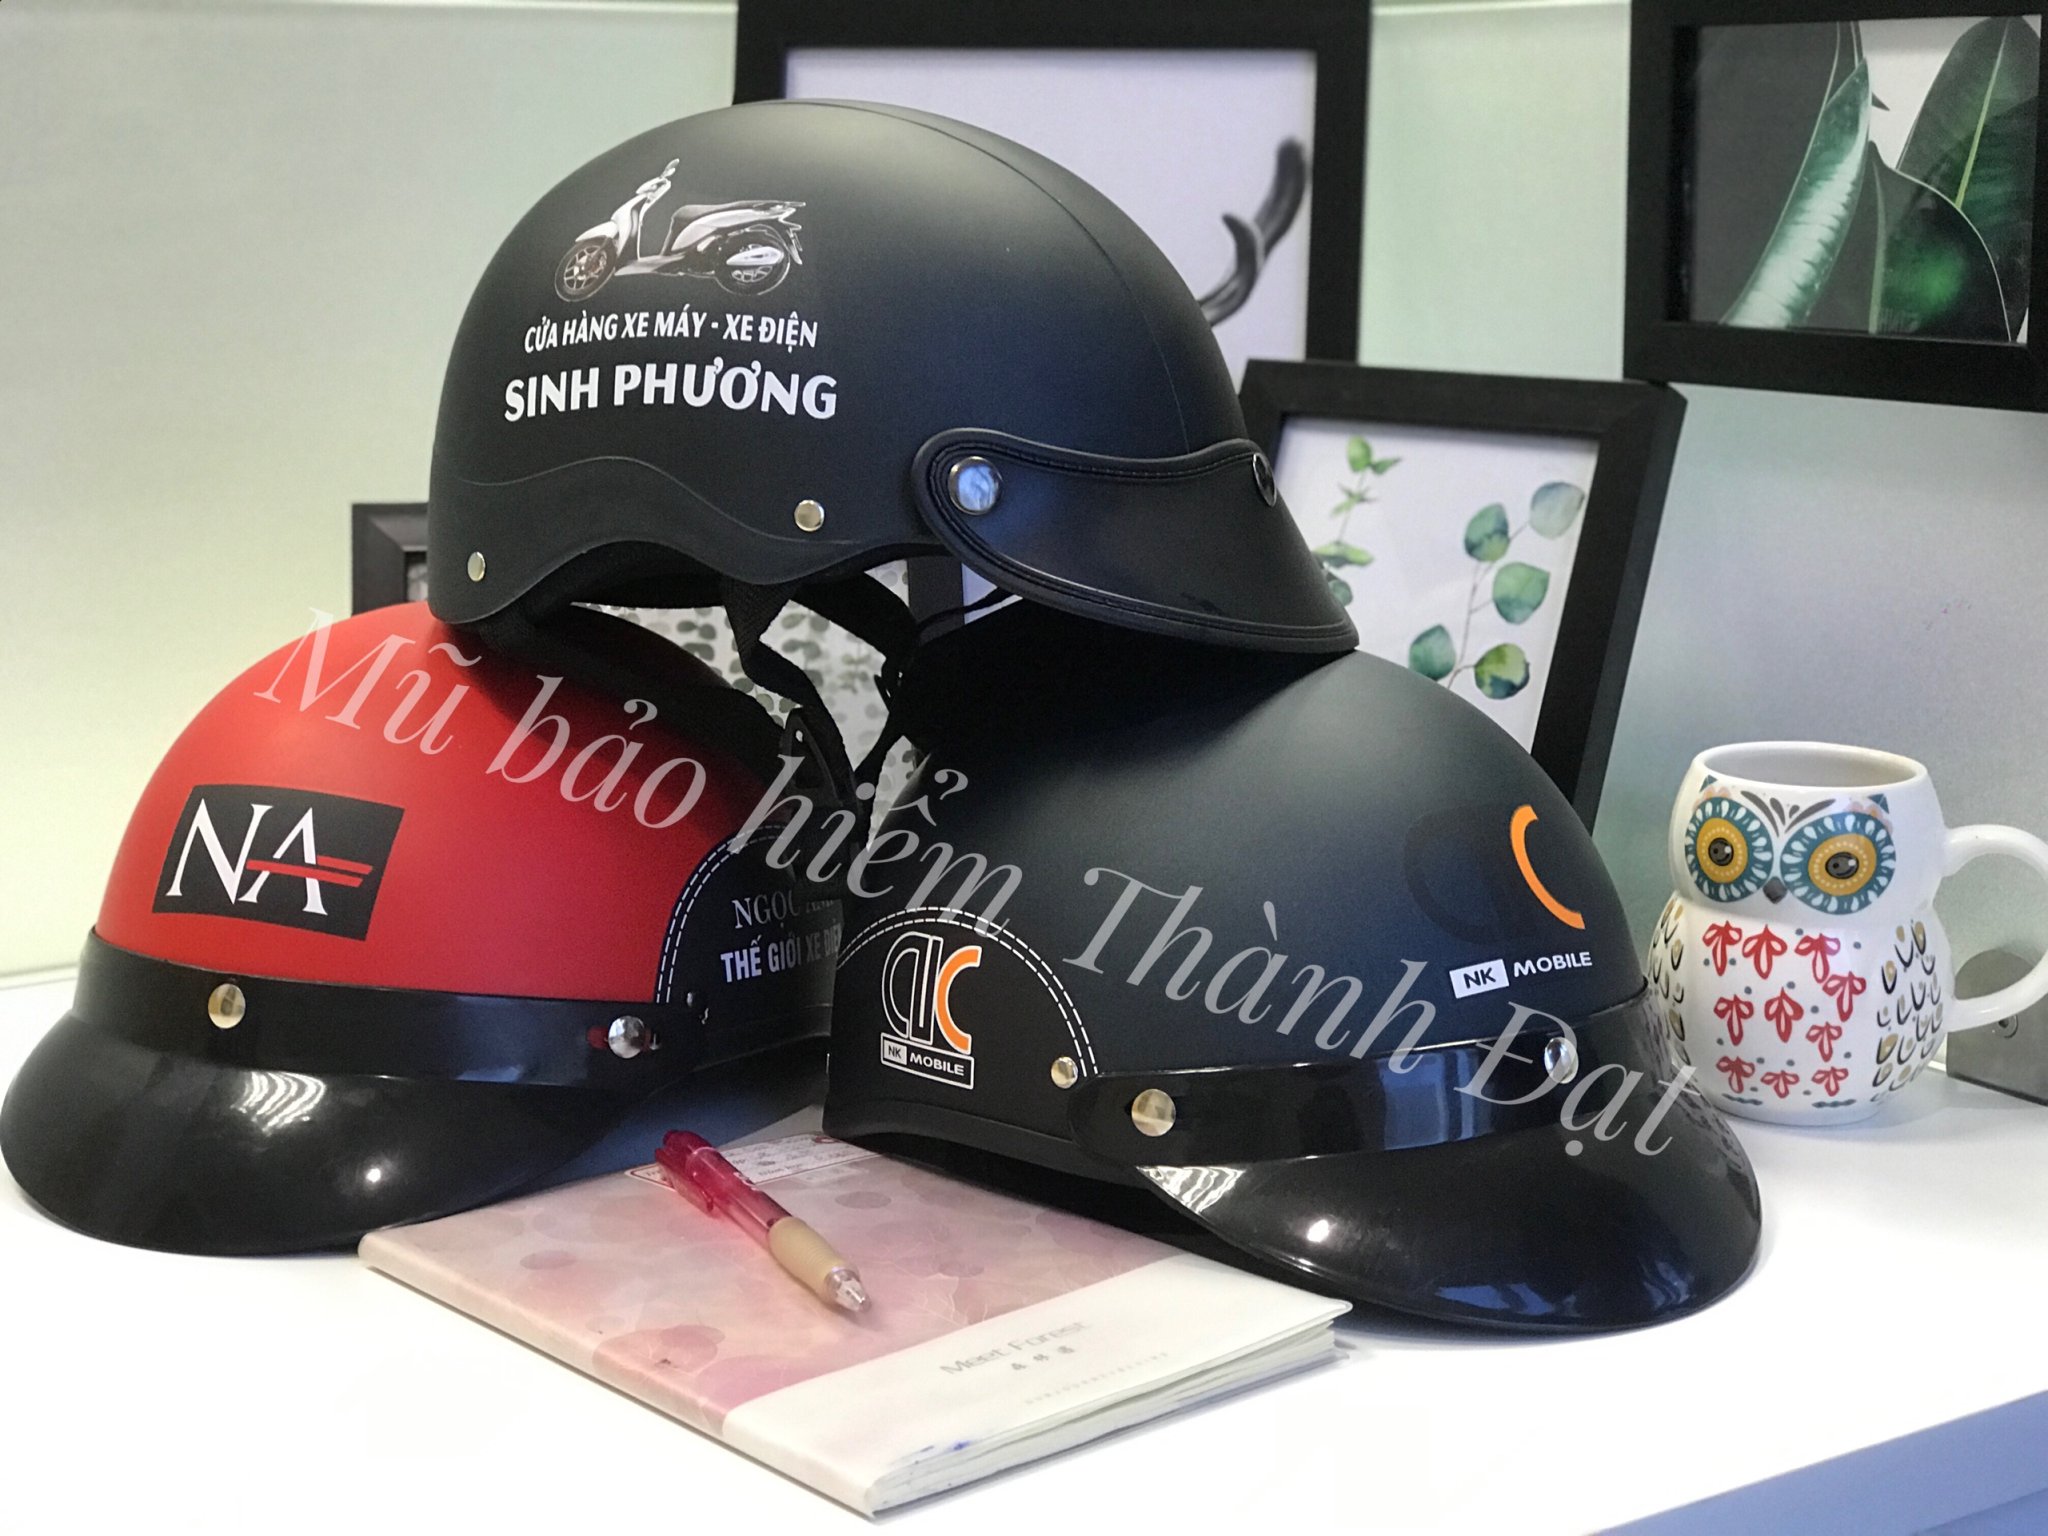 Mũ bảo hiểm - Mũ Bảo Hiểm Thành Đạt Helmet - Công Ty TNHH Mũ Bảo Hiểm Quảng Cáo Thành Đạt